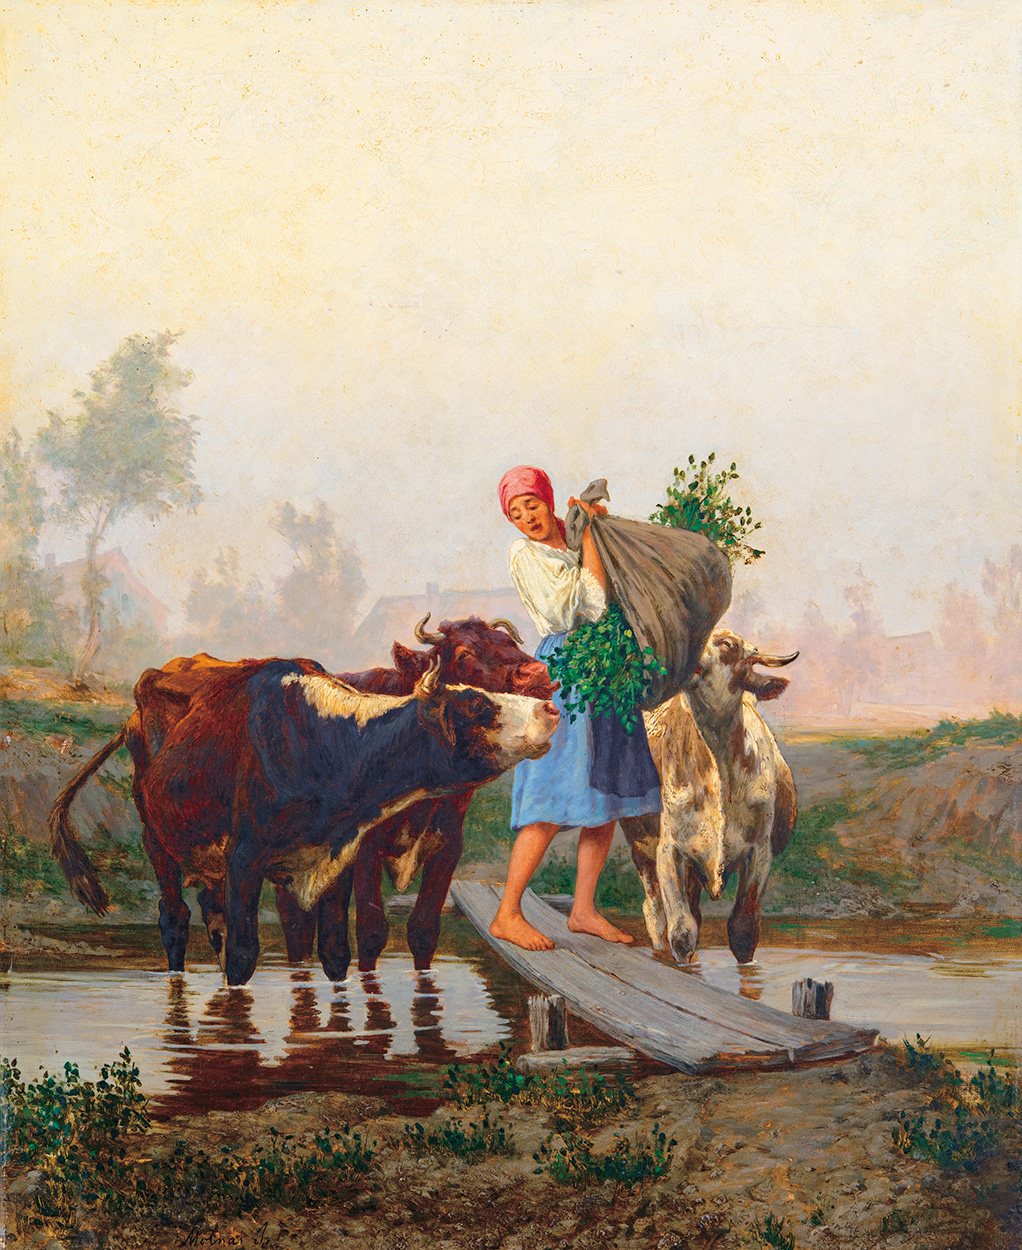 Molnár József (1821-1899) Feeding by the Stream (On the way back Home)